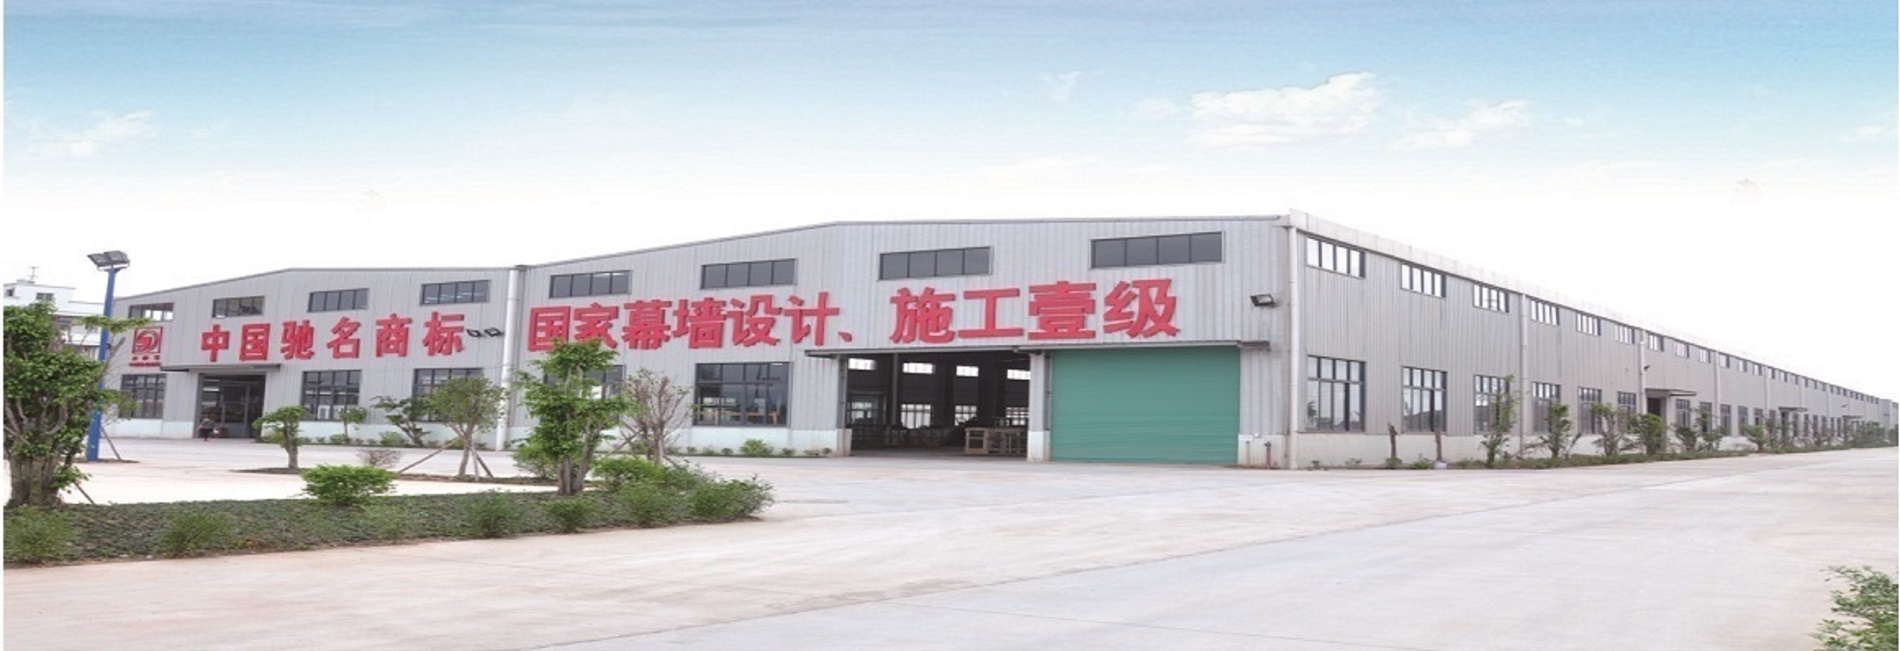 广东大型铝型材生产加工企业